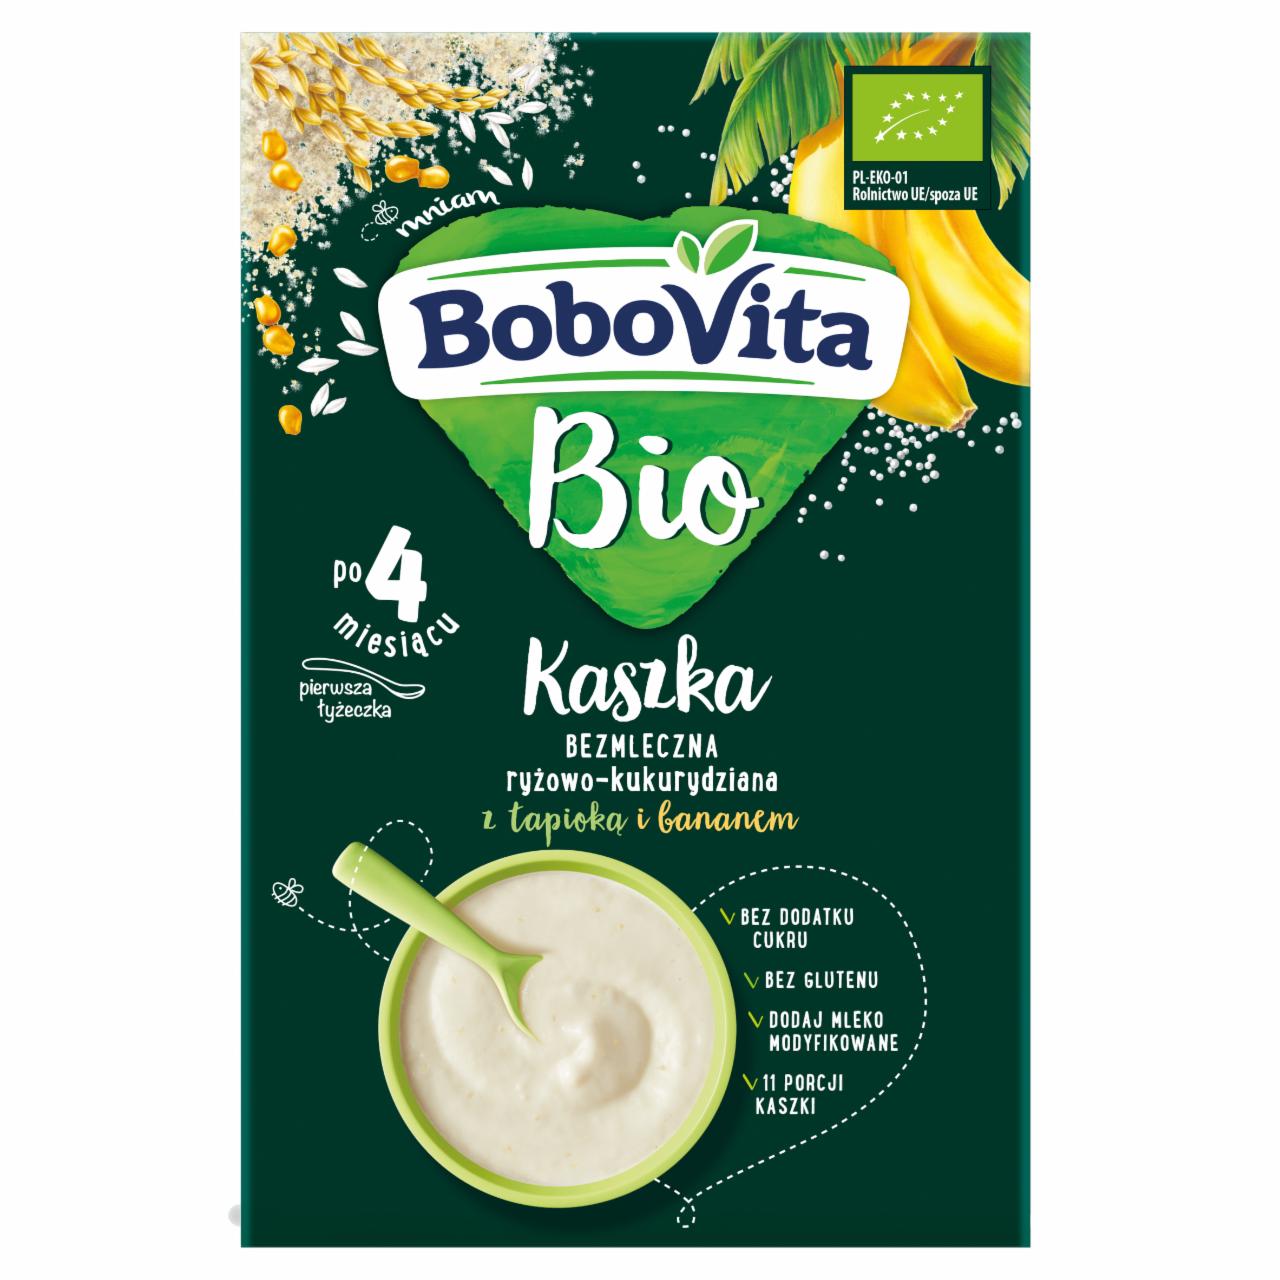 Zdjęcia - BoboVita Bio Kaszka bezmleczna ryżowo-kukurydziana z tapioką i bananem po 4 miesiącu 200 g